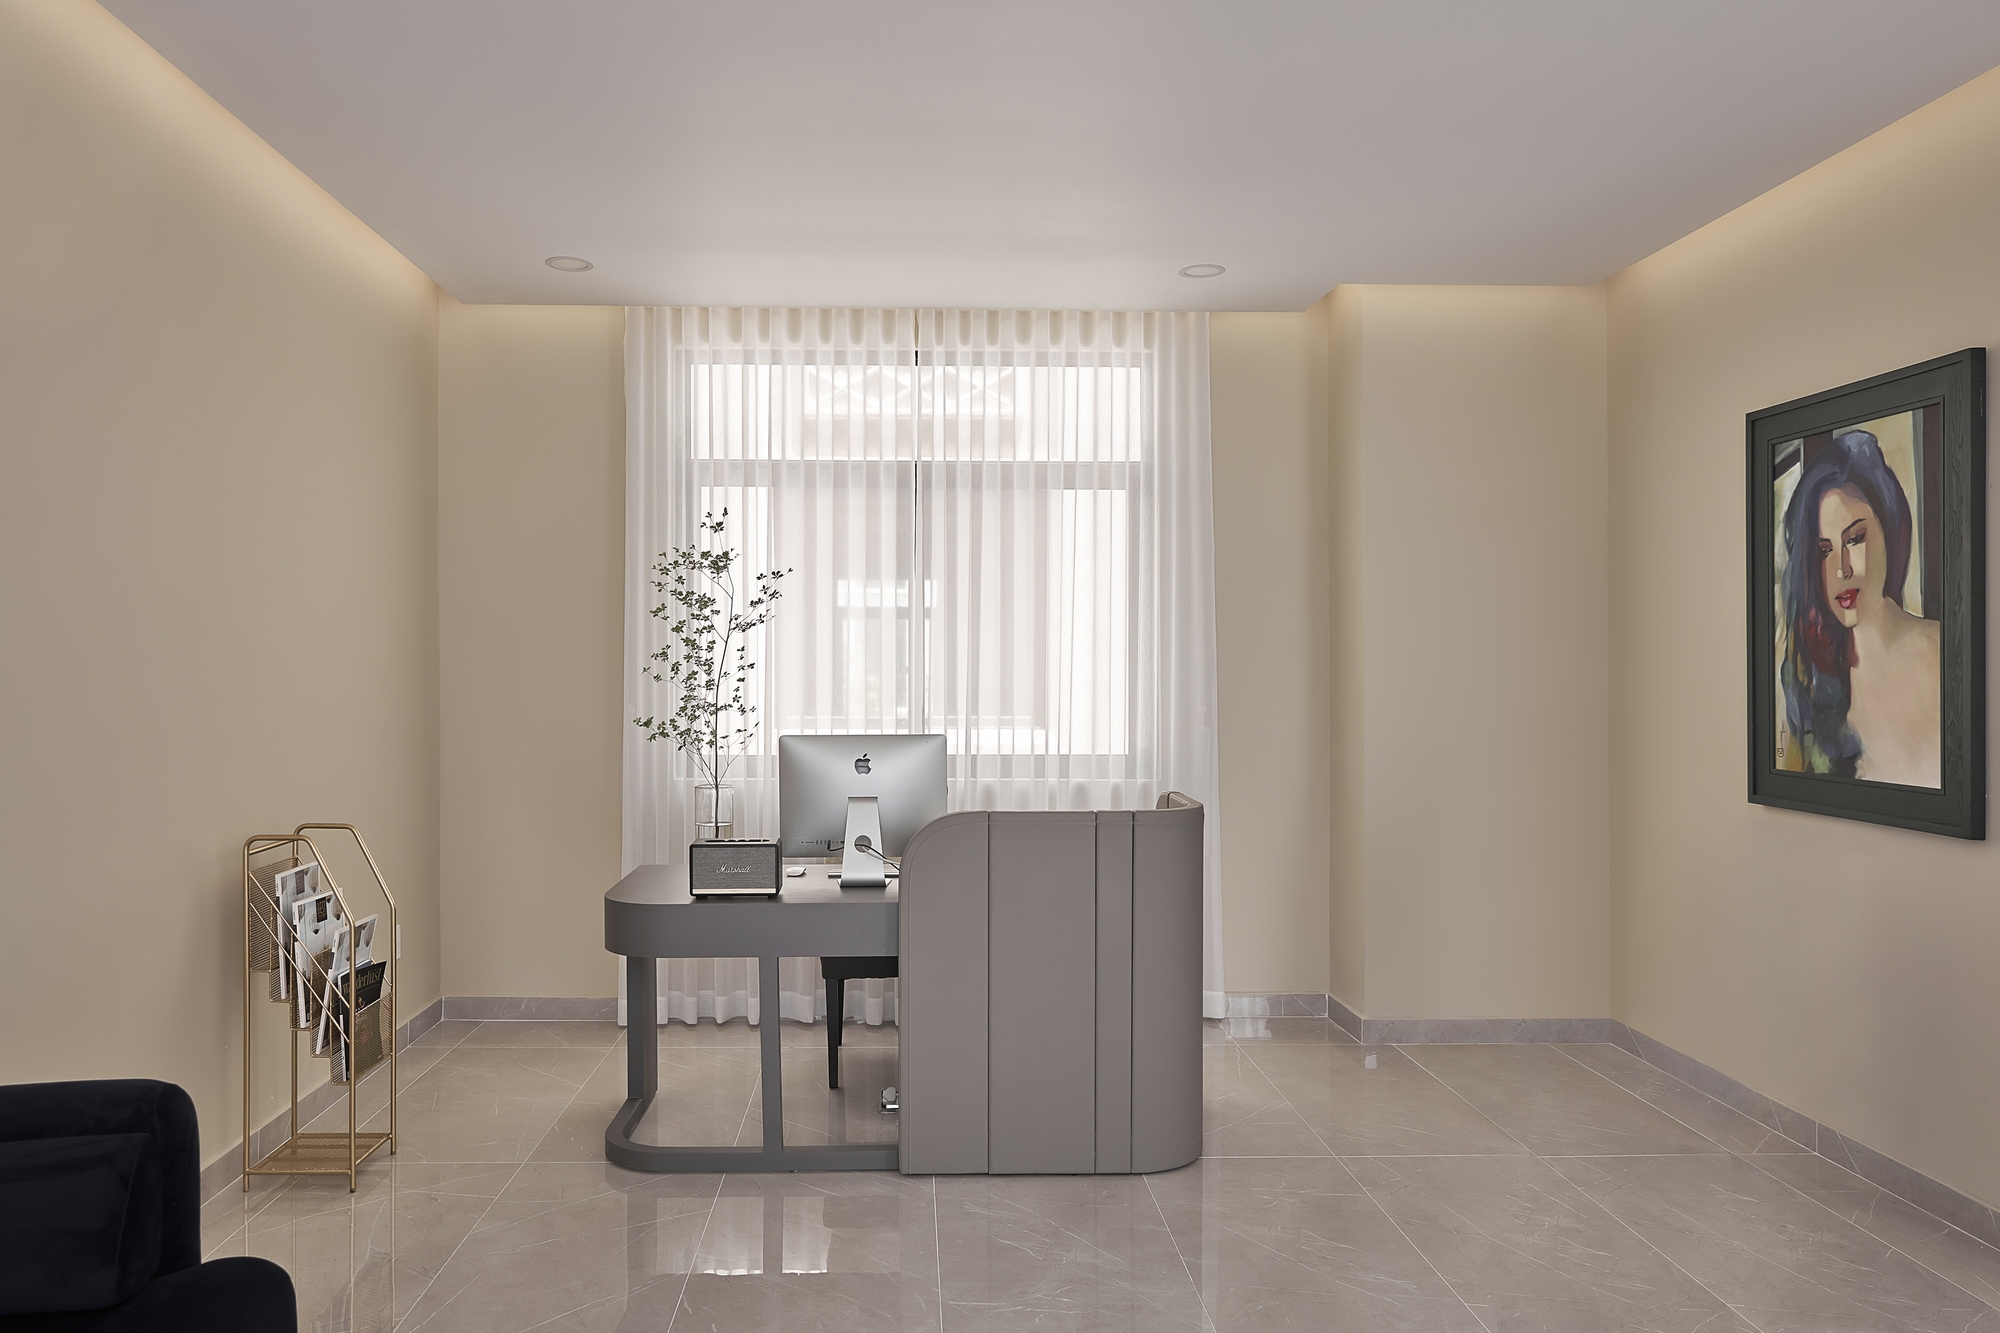 Ngắm không gian sống đẳng cấp của nữ giám đốc 8X: Rộng 300m² sử dụng toàn đồ nội thất ngoại nhập - Ảnh 14.